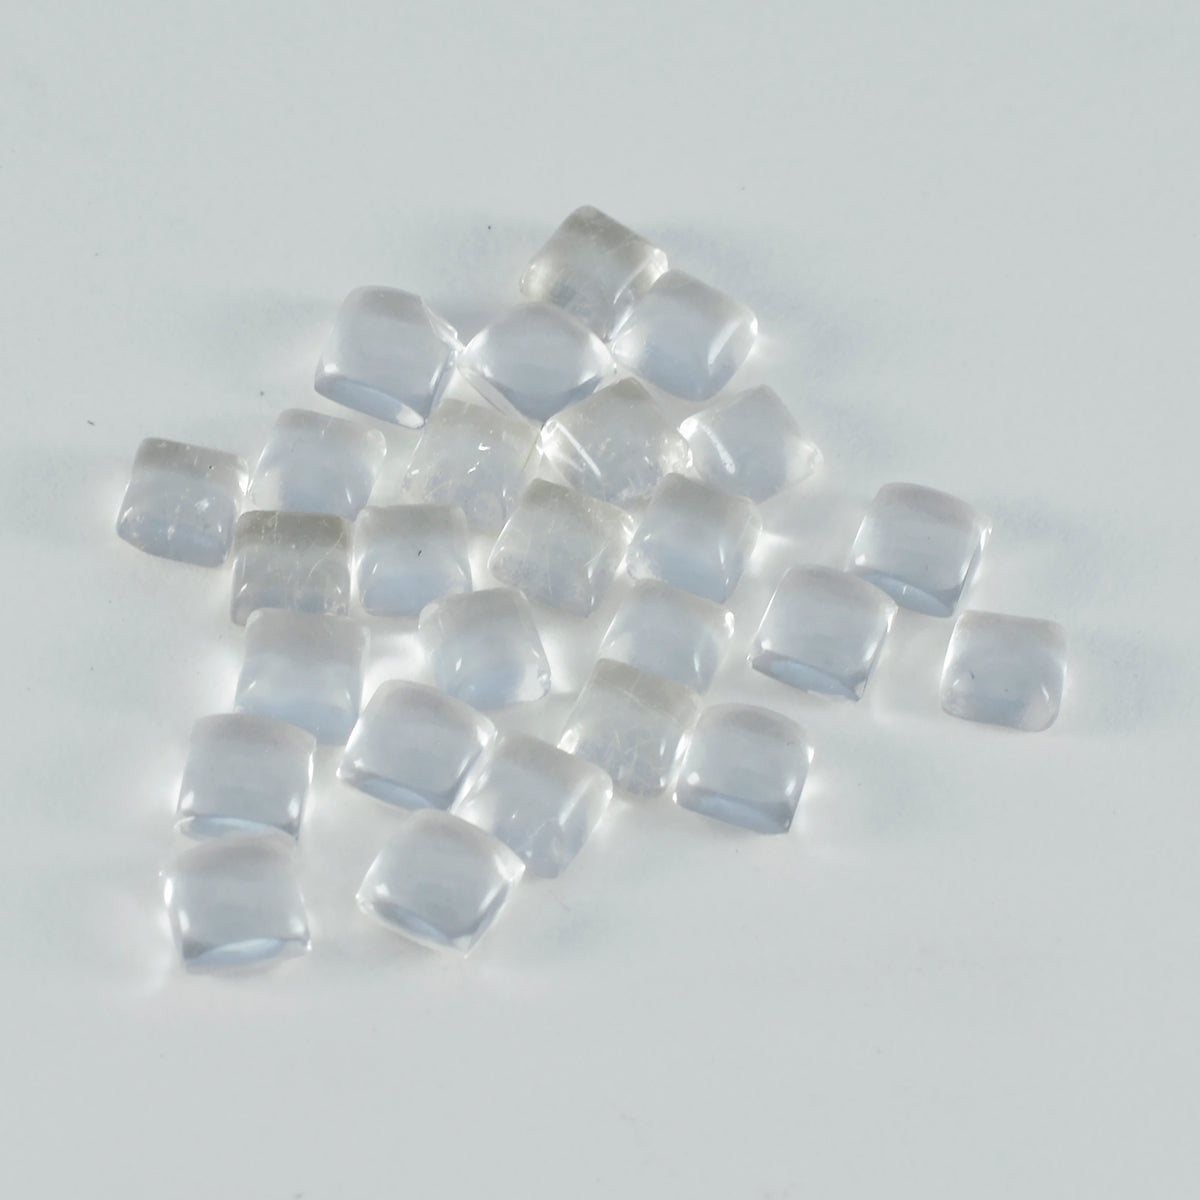 Riyogems 1PC witte kristalkwarts cabochon 5x5 mm vierkante vorm mooie kwaliteitsedelstenen